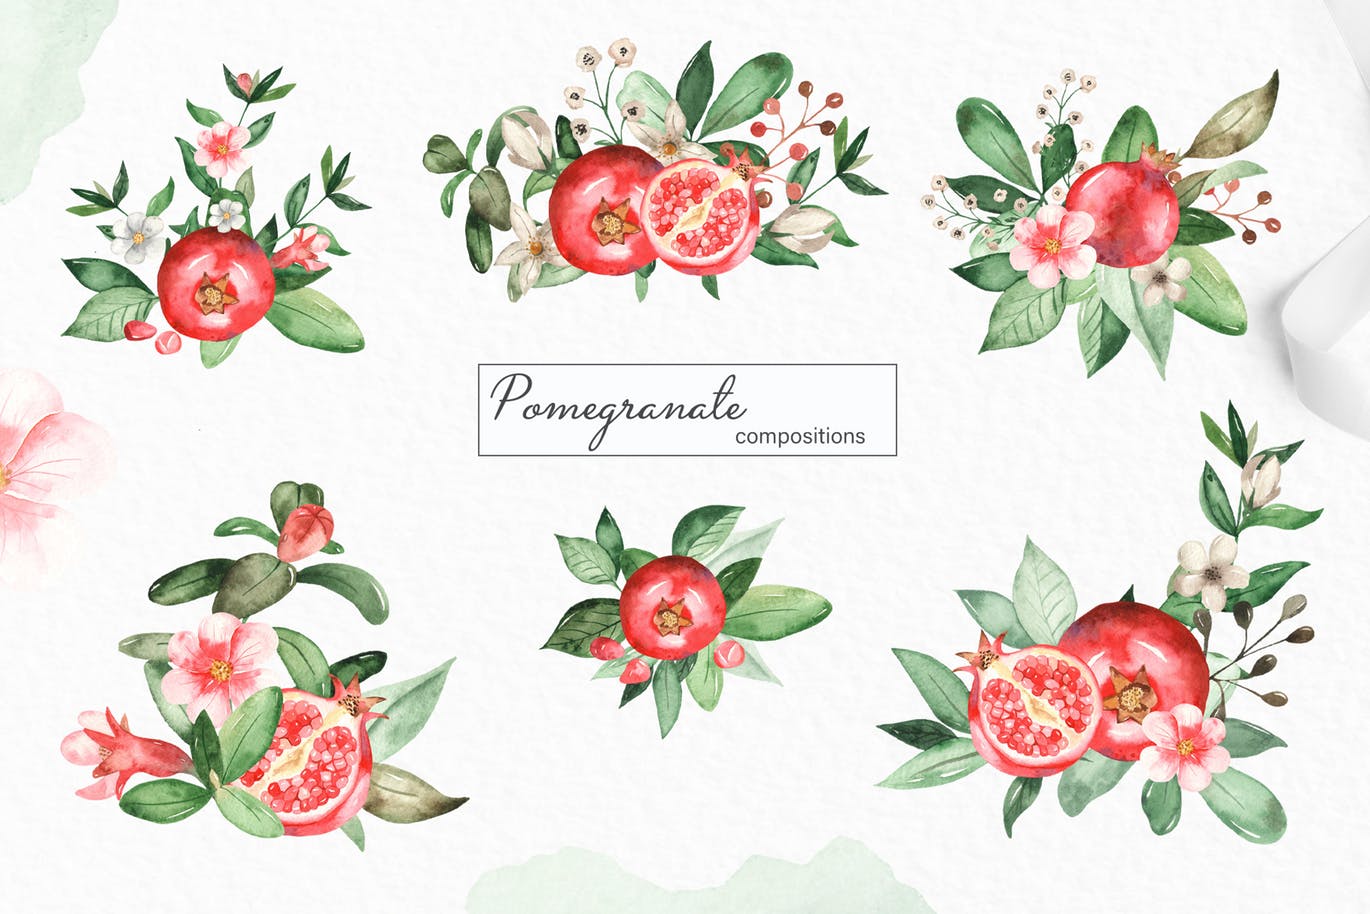 水彩石榴剪贴画/花框/花环素材库精选设计素材 Watercolor pomegranate. Clipart, frames, wreaths插图(1)